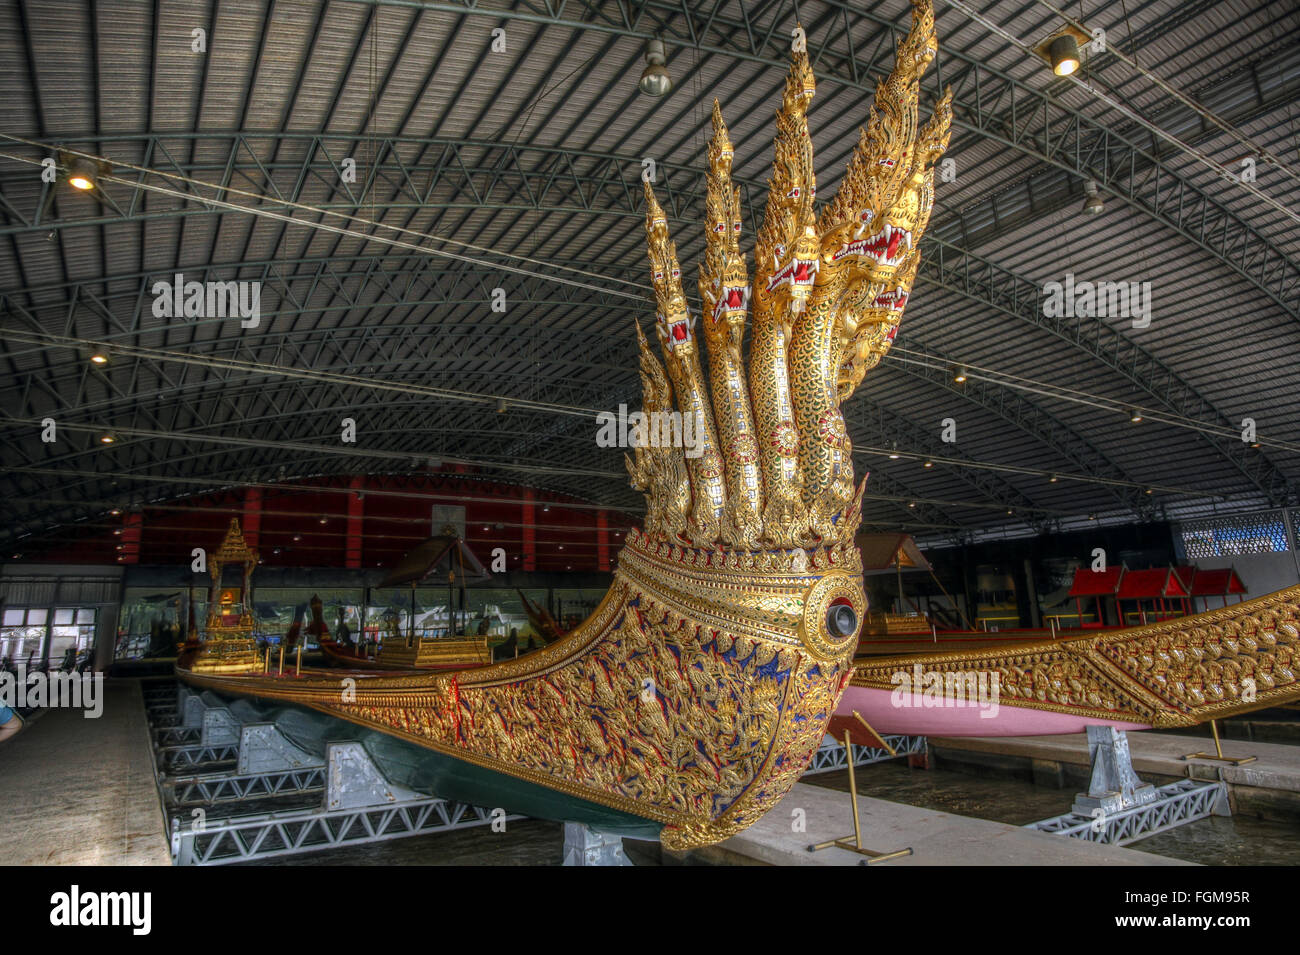 Dragon boat, Anantanaharaj Royal Barge of King Rama VI, Royal Barges National Museum, Bangkok, Thailand Stock Photo